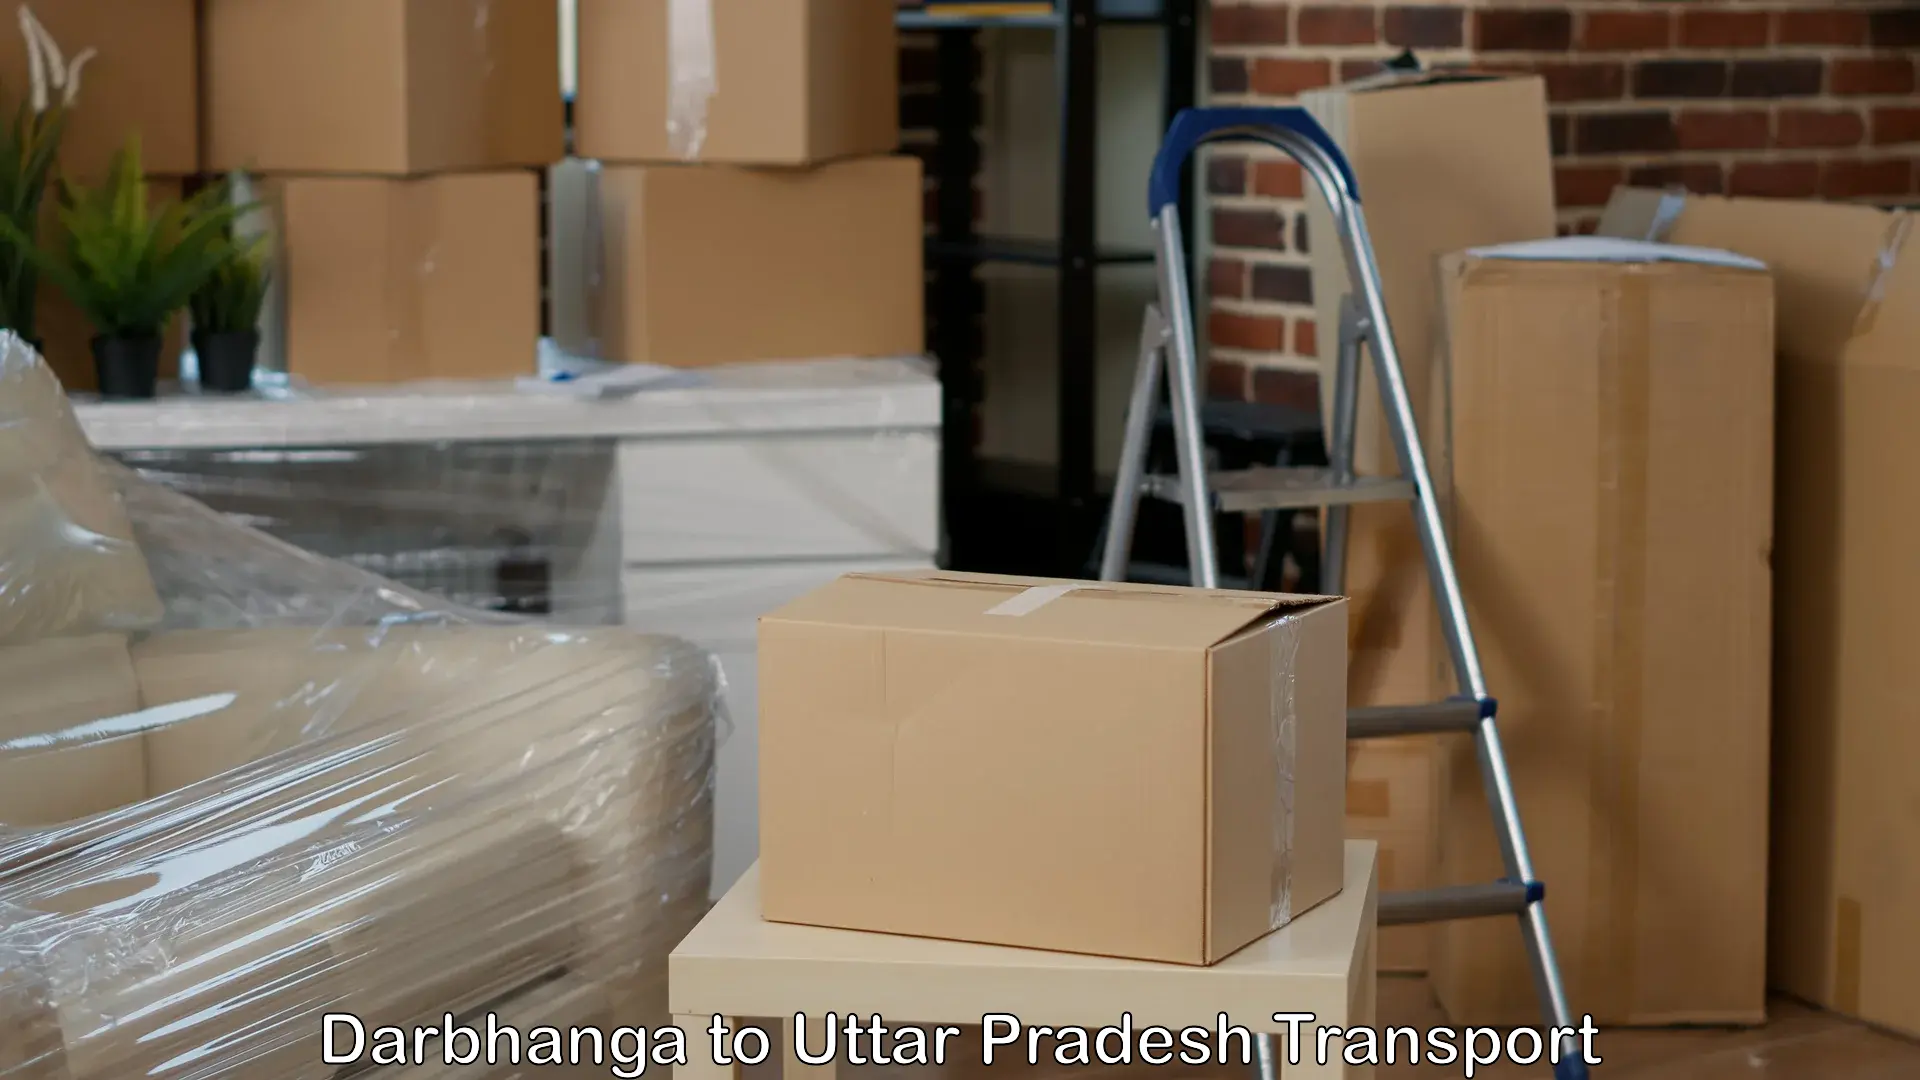 Truck transport companies in India Darbhanga to Pachperwa